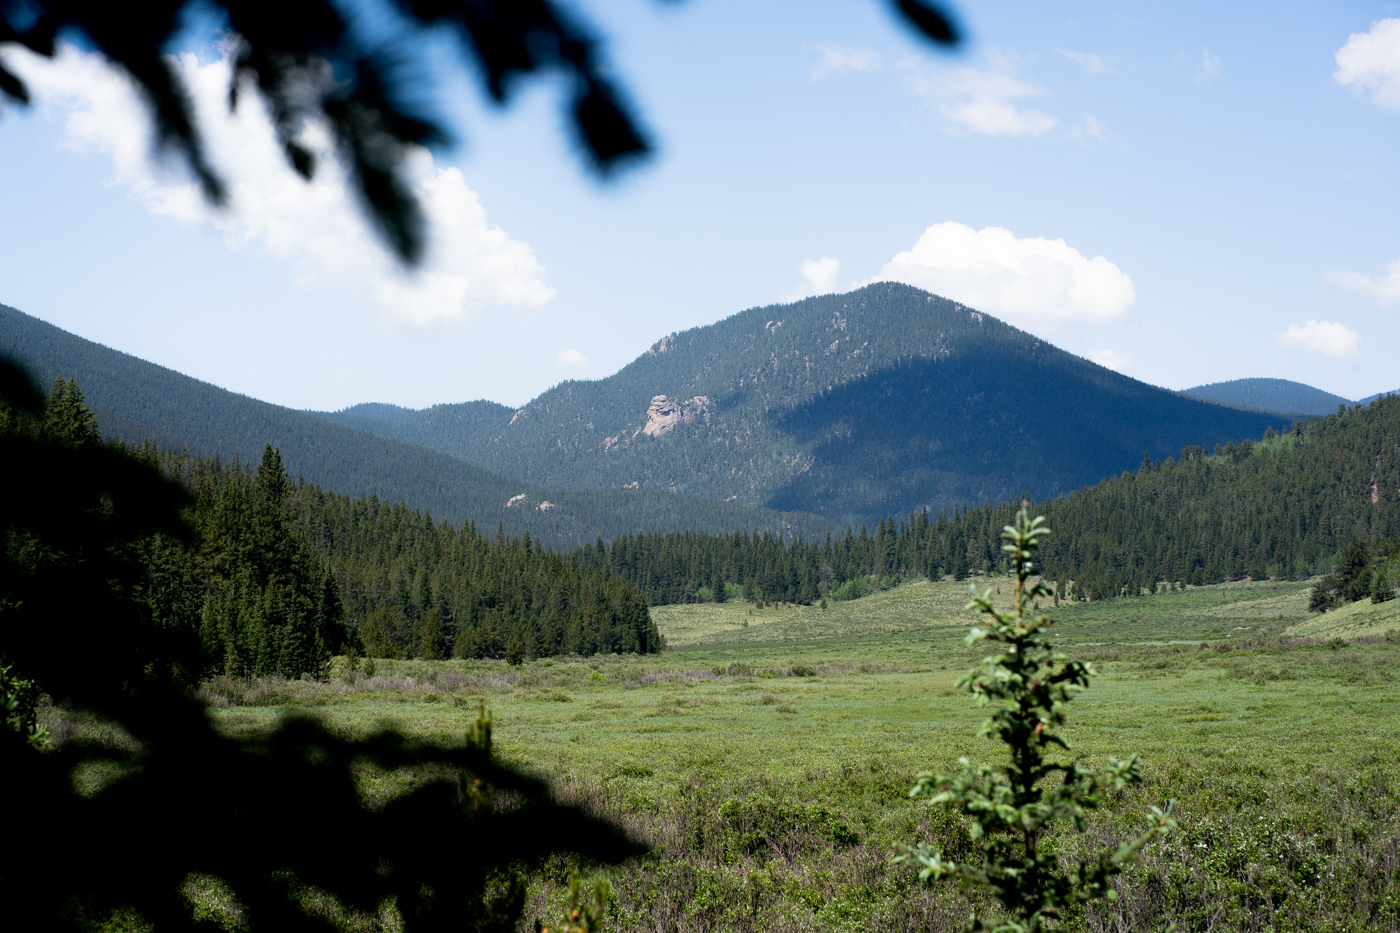 Thru the trees, a meadown crawls towards a Colorado mountain